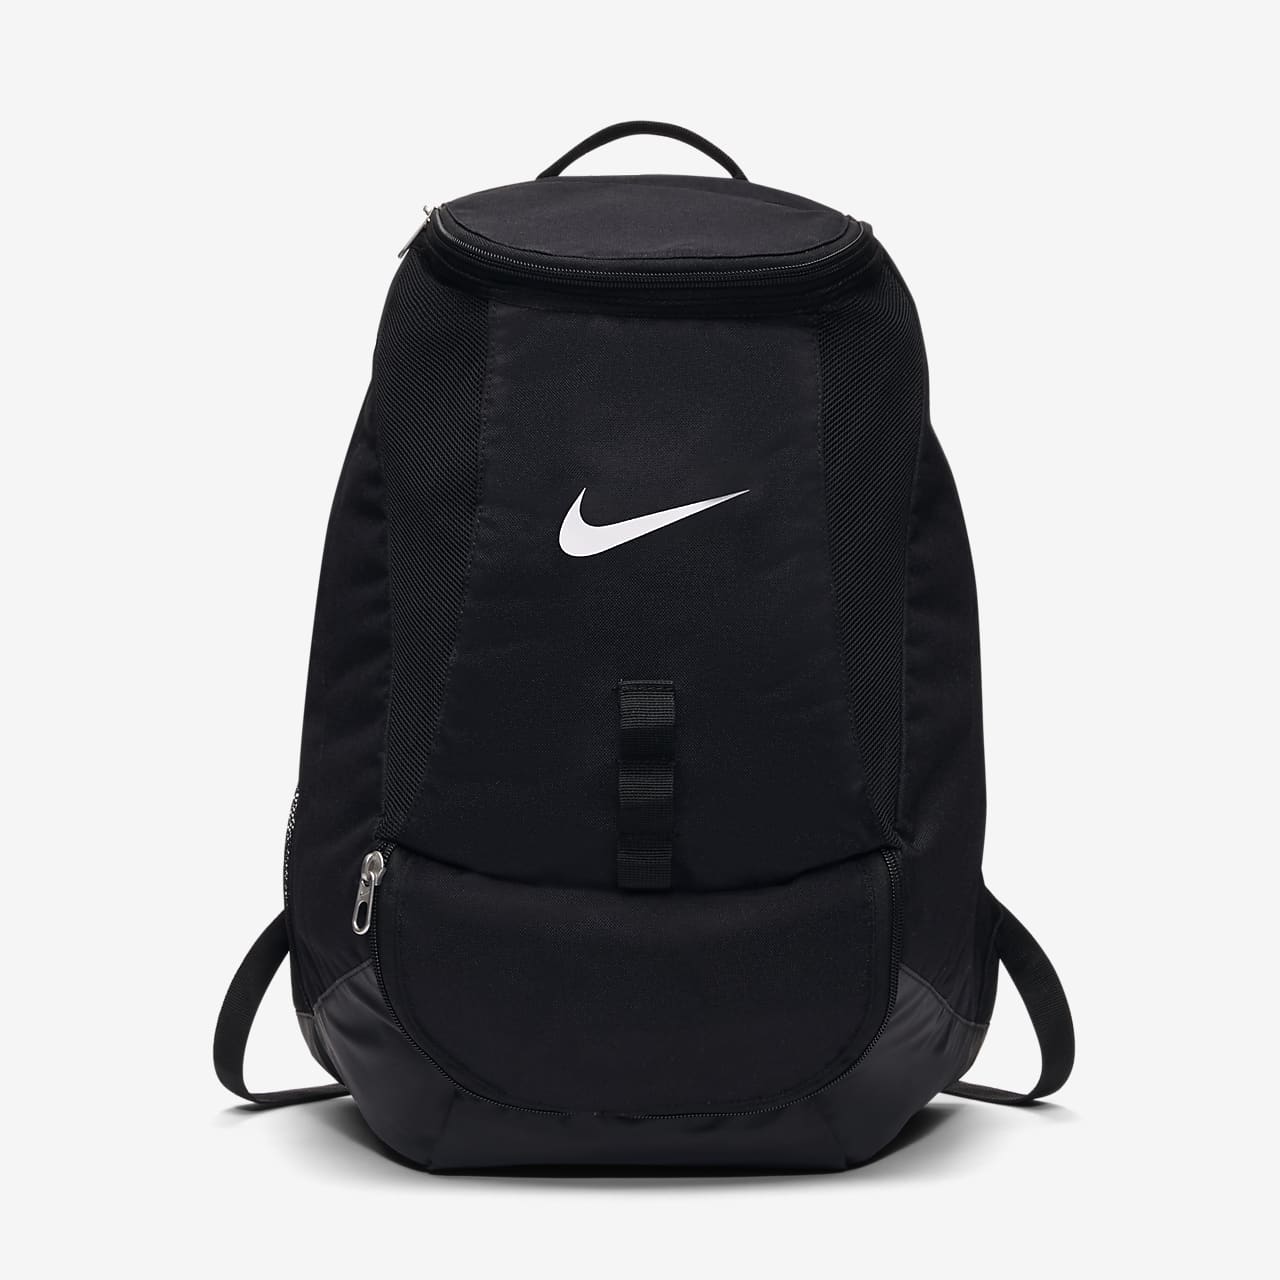 nike black and grey backpack